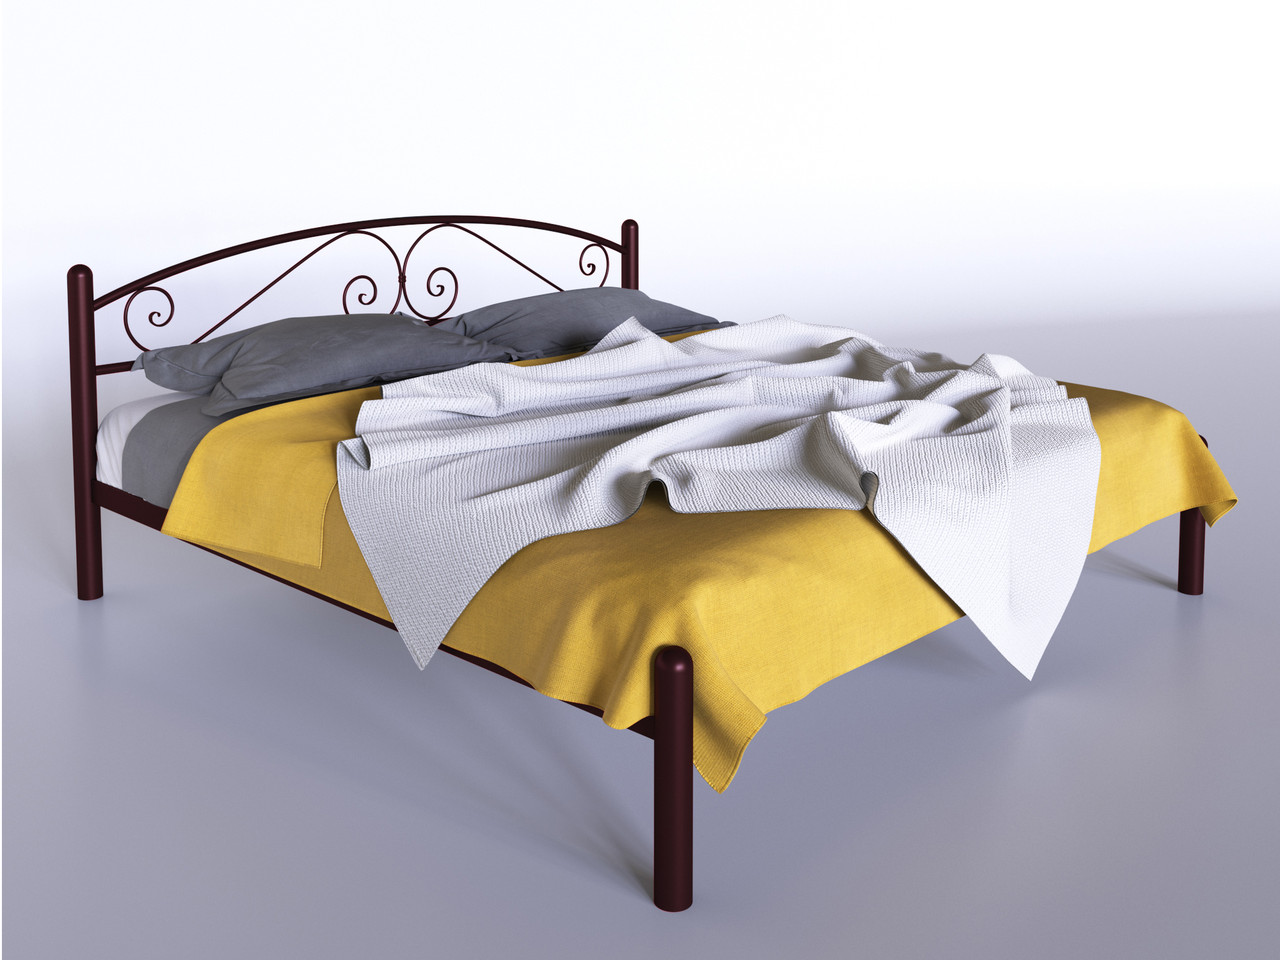 Двоспальне ліжко Віола Tenero 160х200 см бордовий колір металу